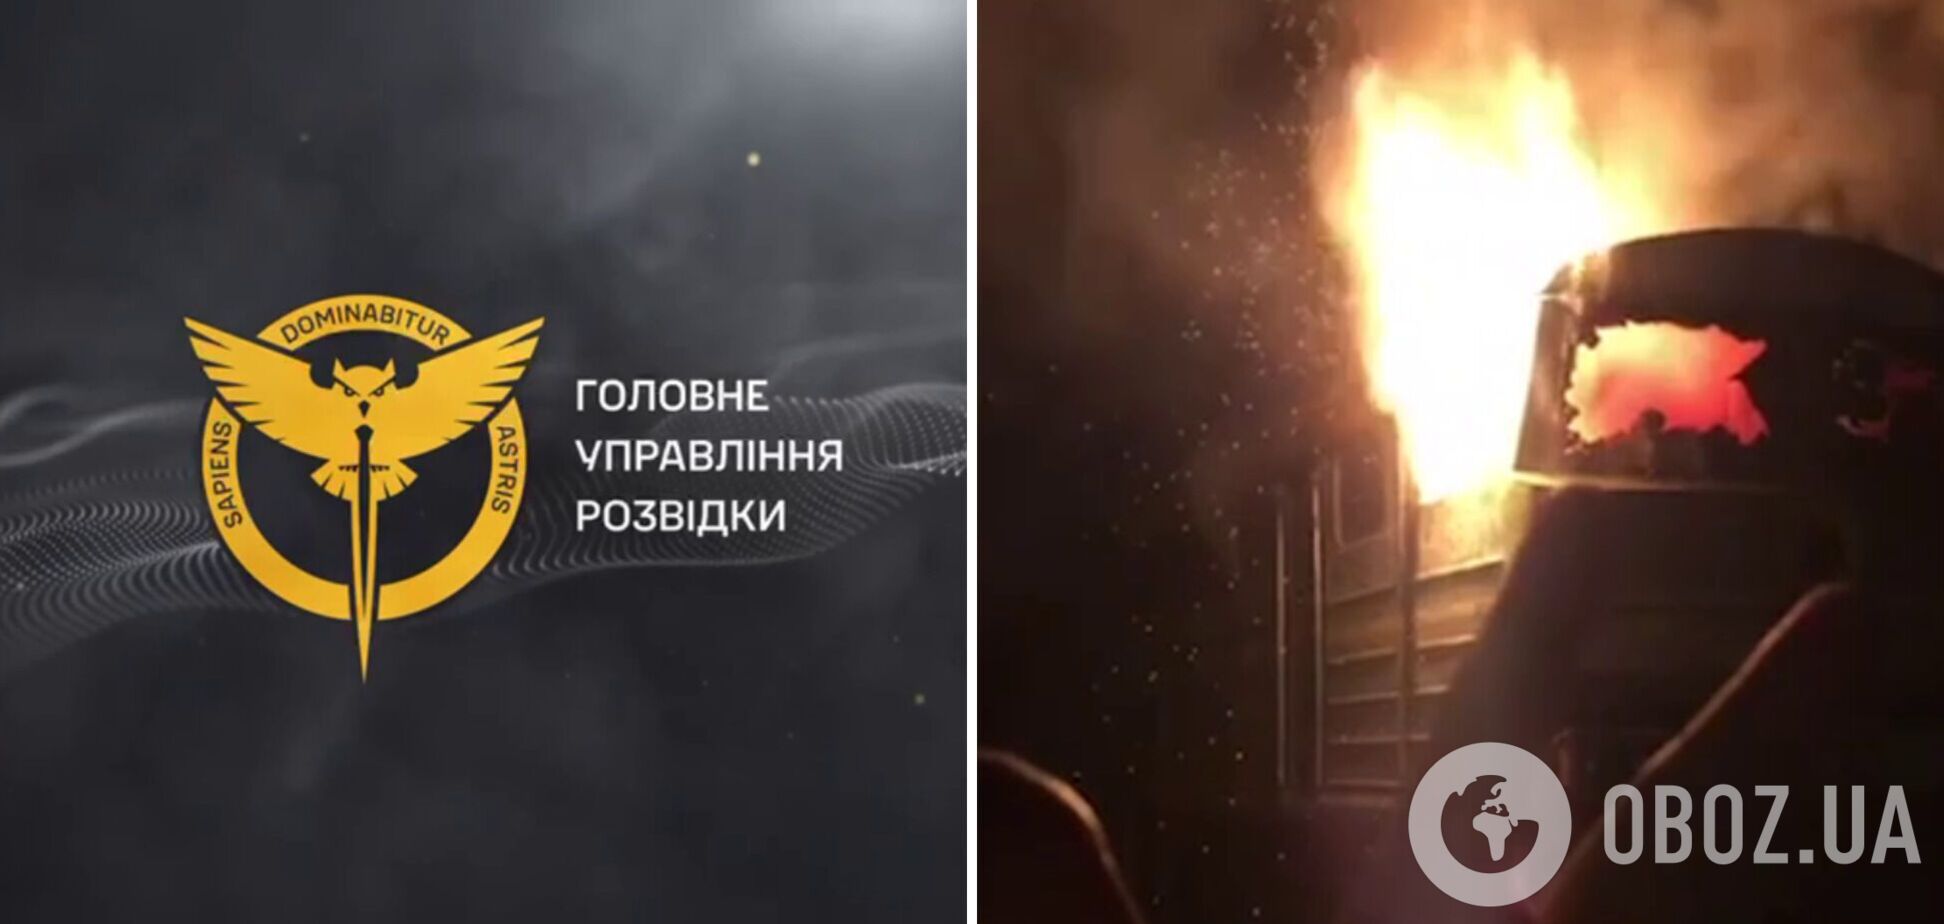 Очередной пожар в России